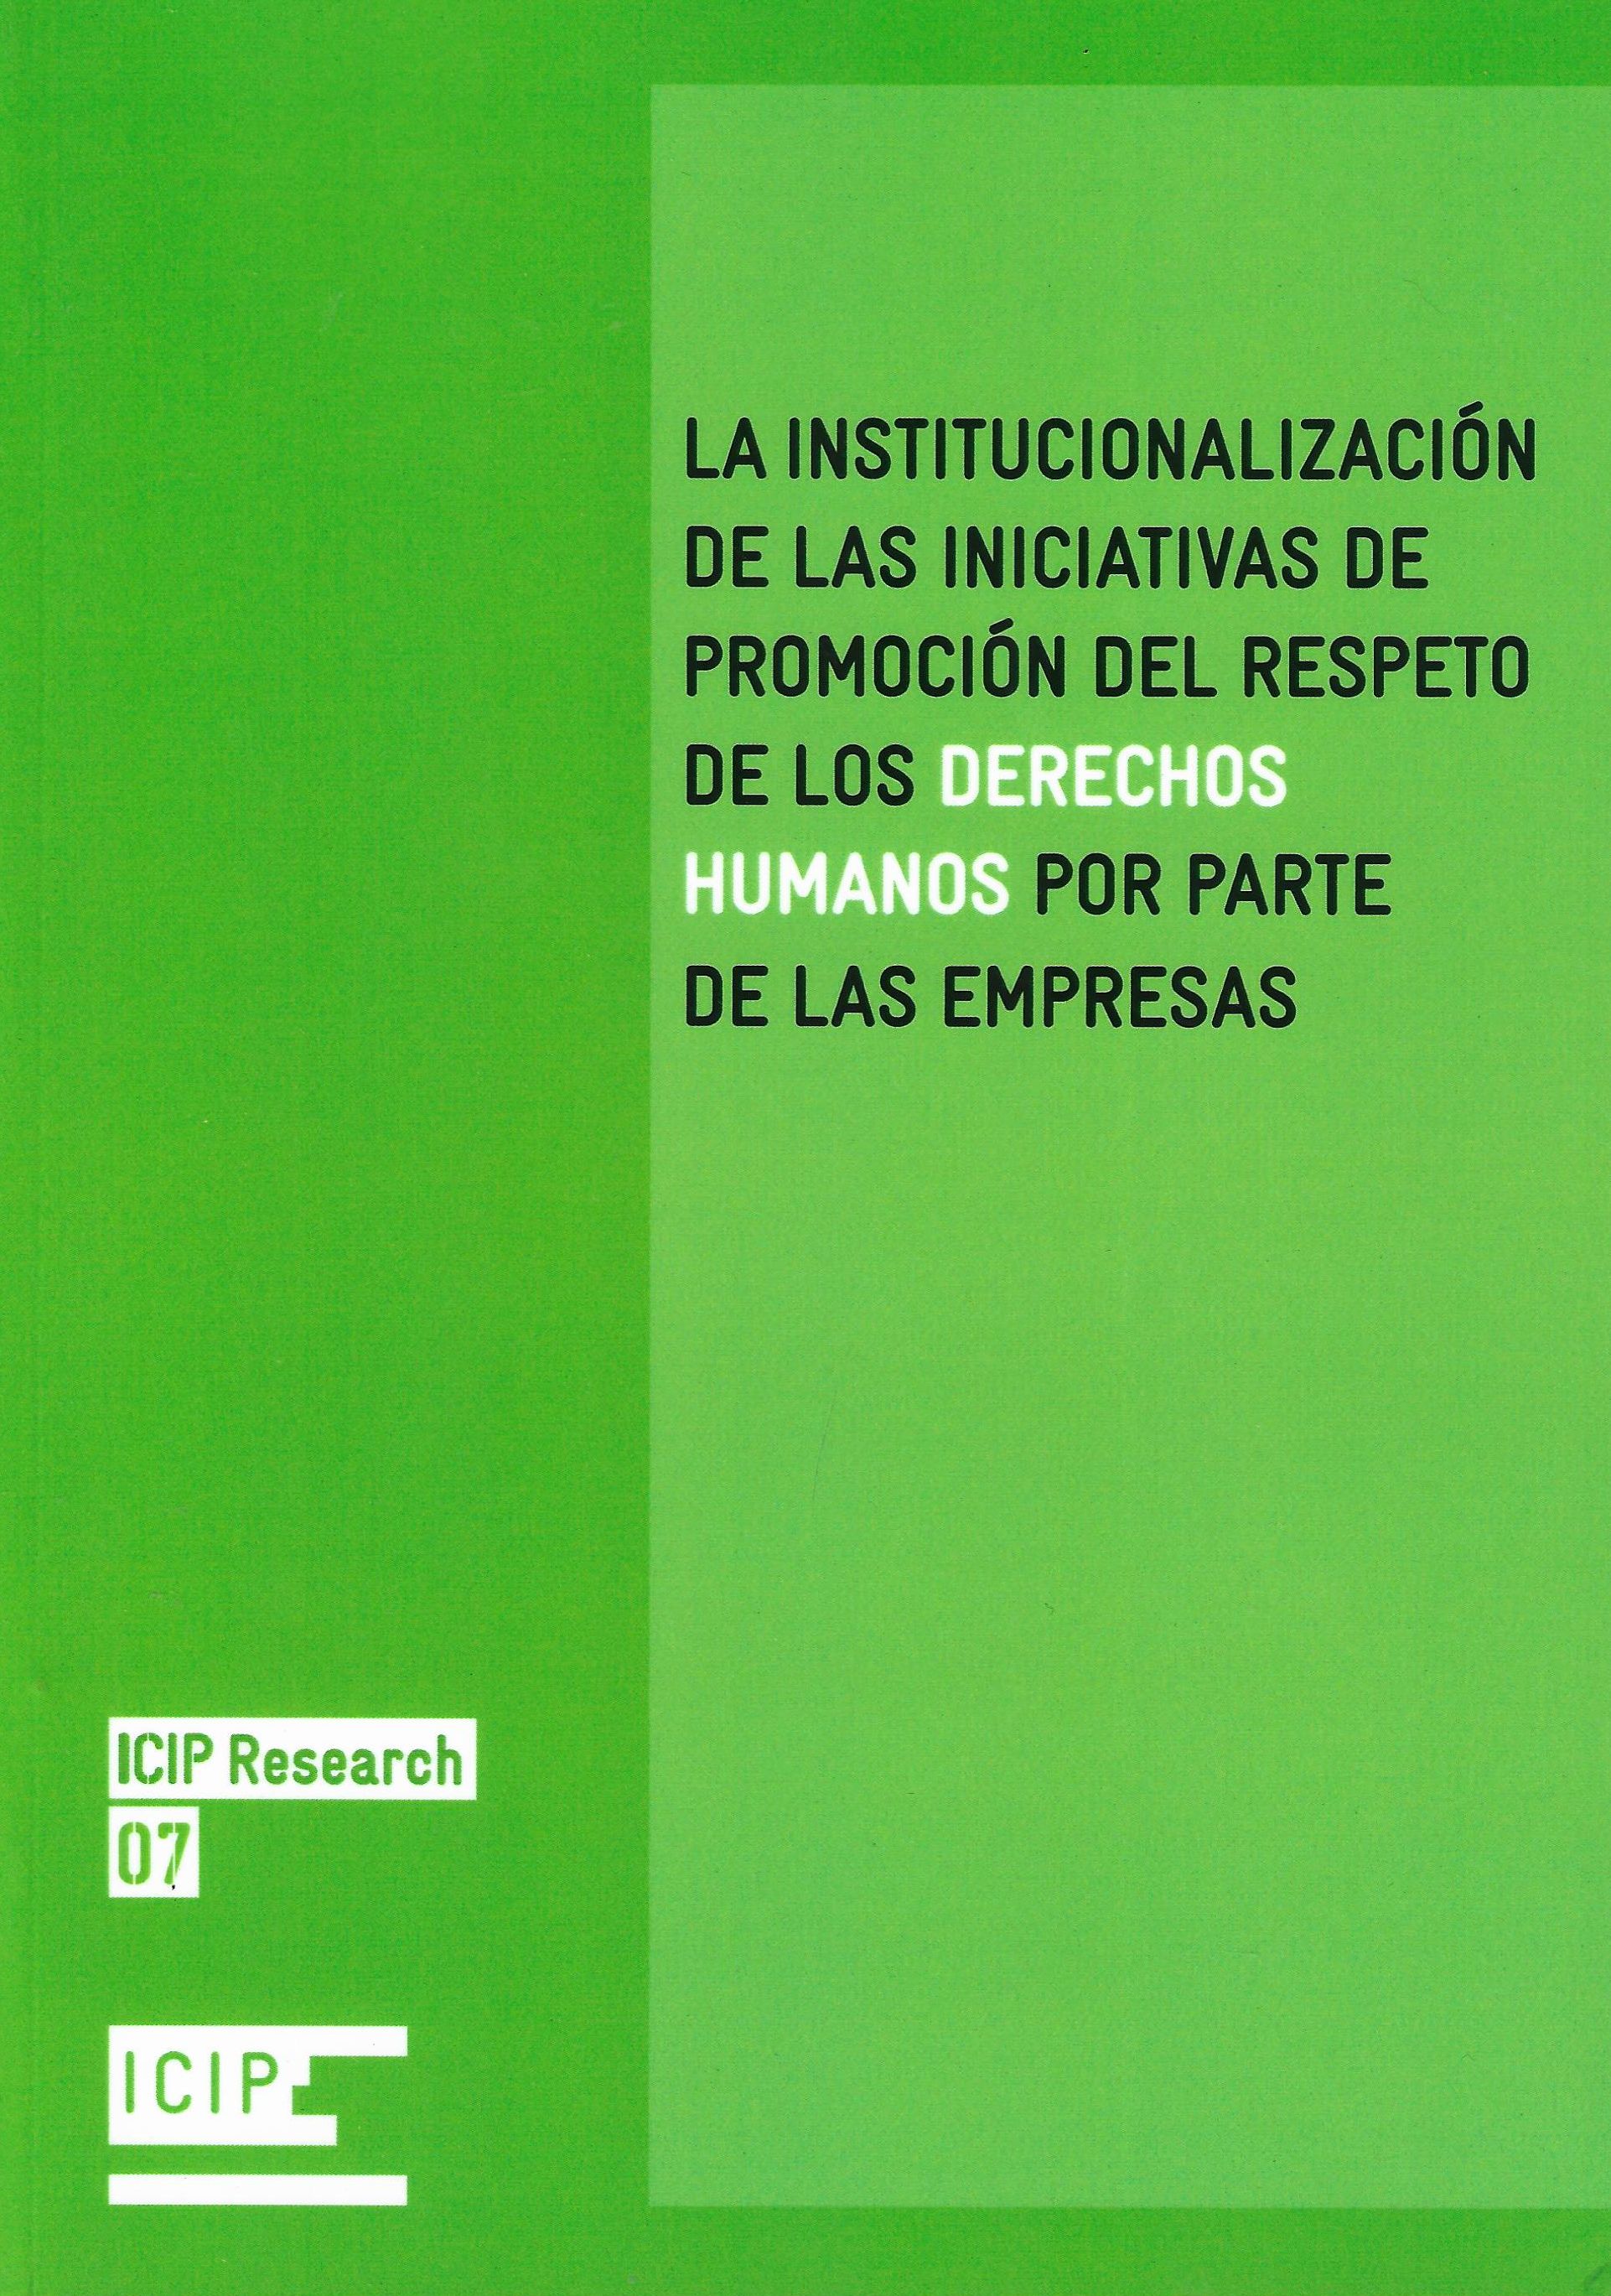 Imagen de portada del libro La institucionalización de las iniciativas de promoción del respeto de los derechos humanos por parte de las empresas